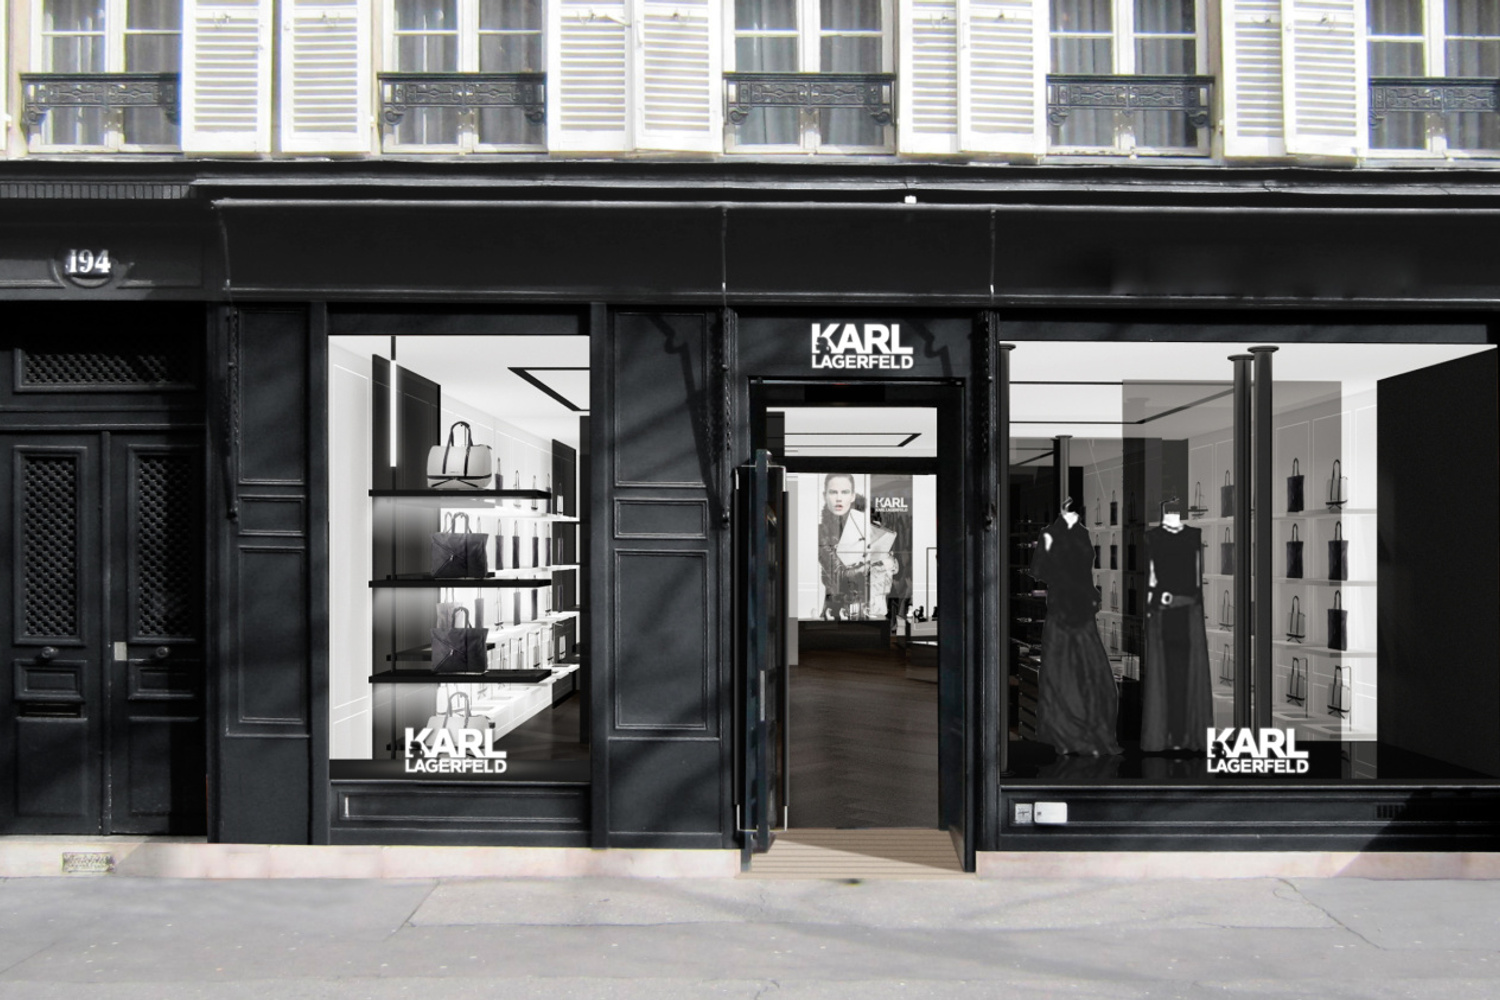 Le Karl Lagerfeld Store - Saint Germain Shop Paris